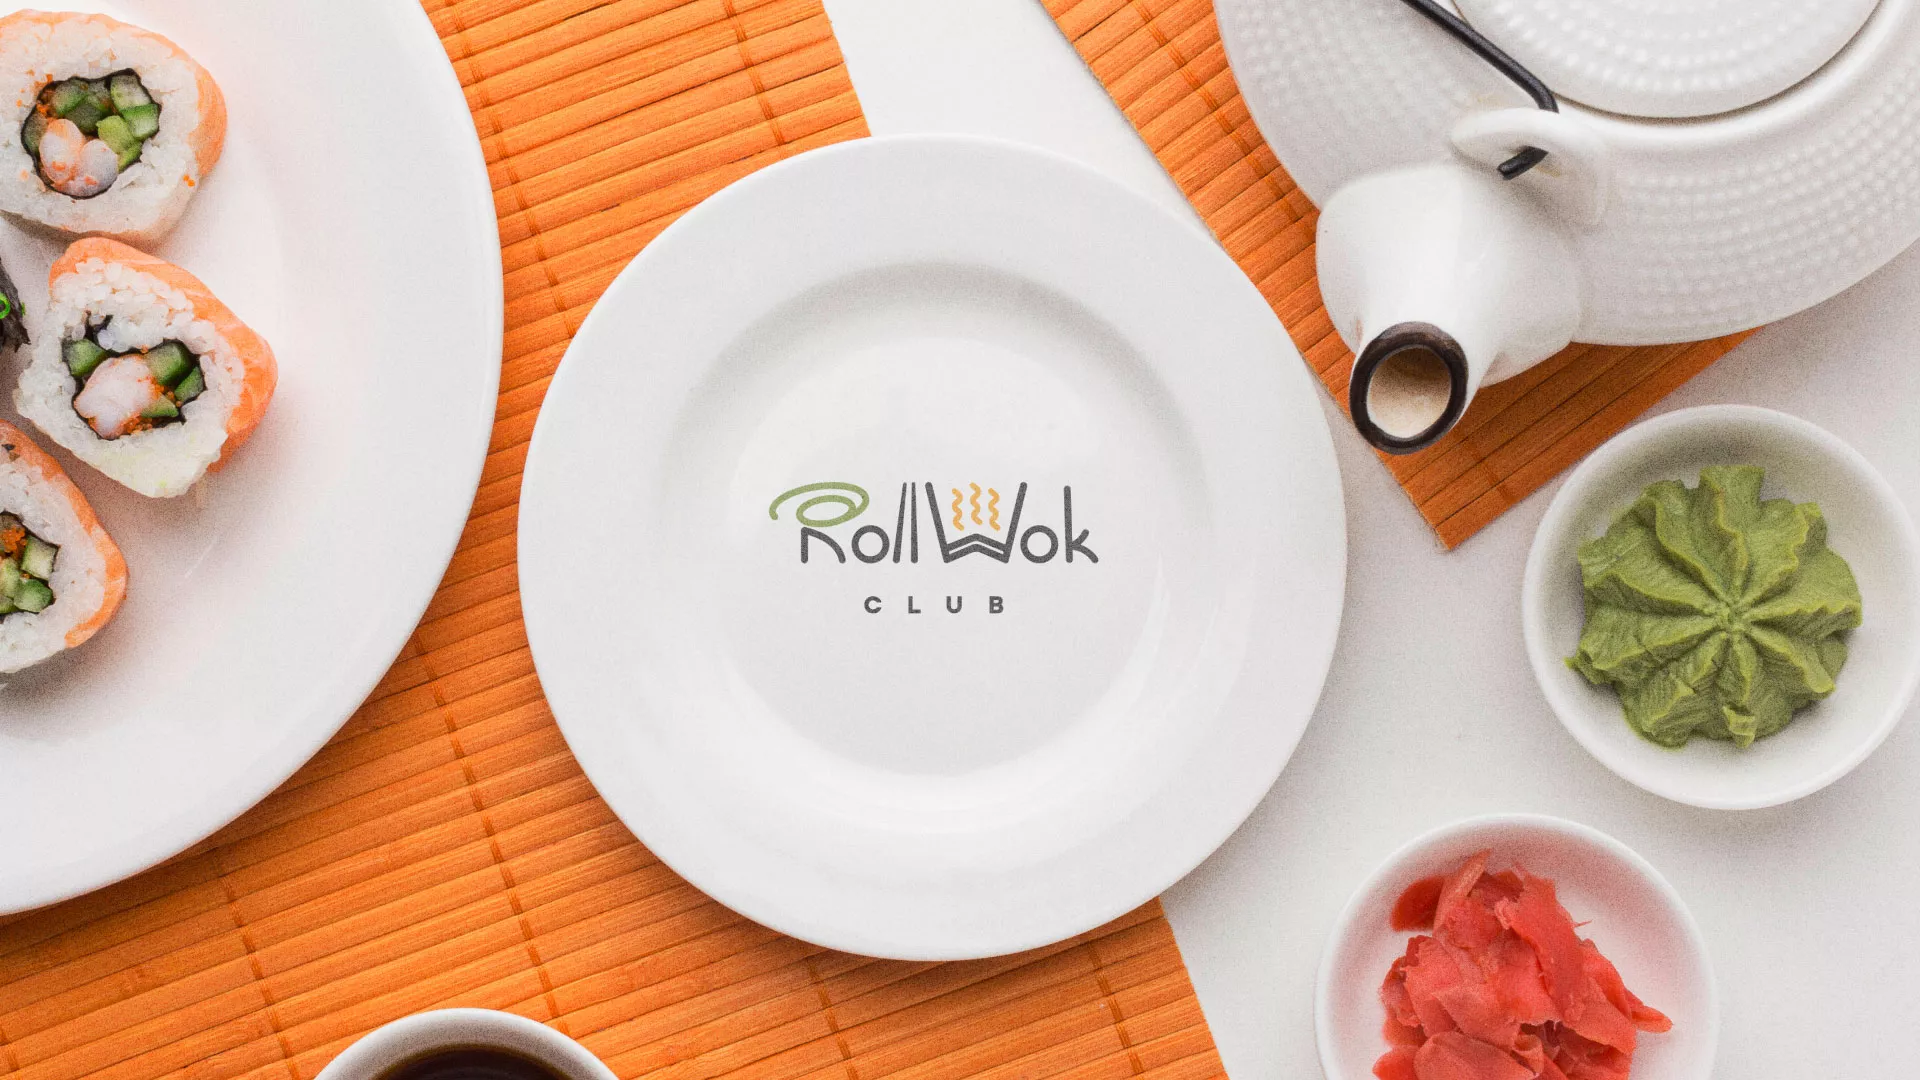 Разработка логотипа и фирменного стиля суши-бара «Roll Wok Club» в Глазове